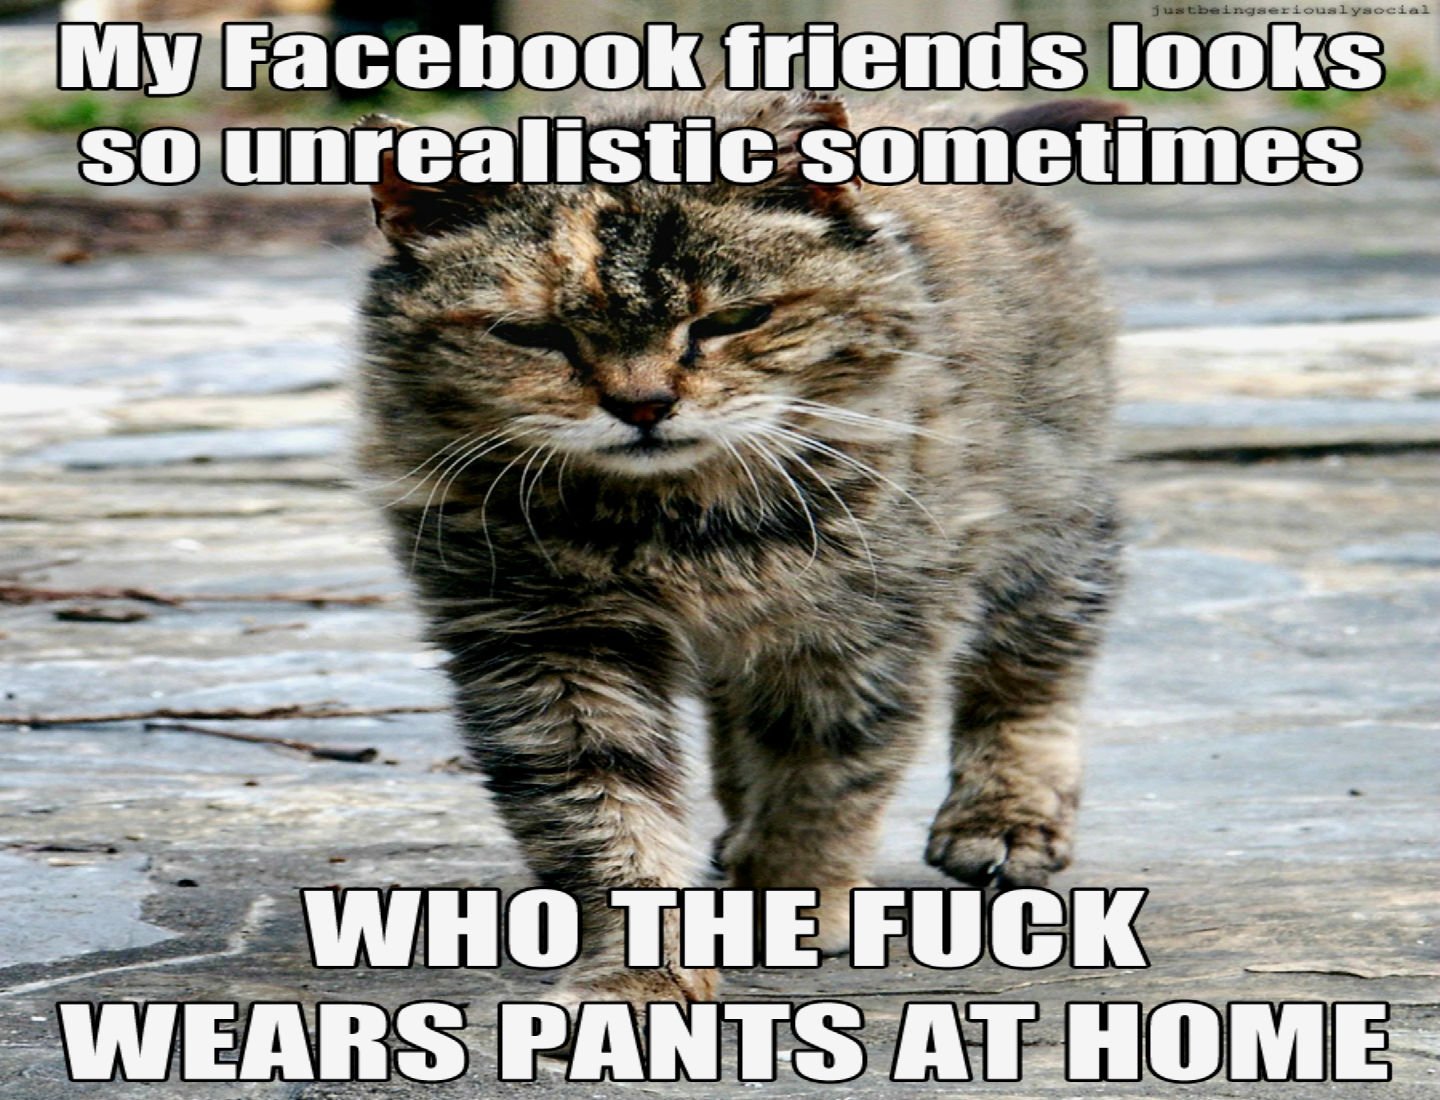 Cat meme quote funny humor grumpy sadic wallpaper 1440x1100 355159 1440x1100